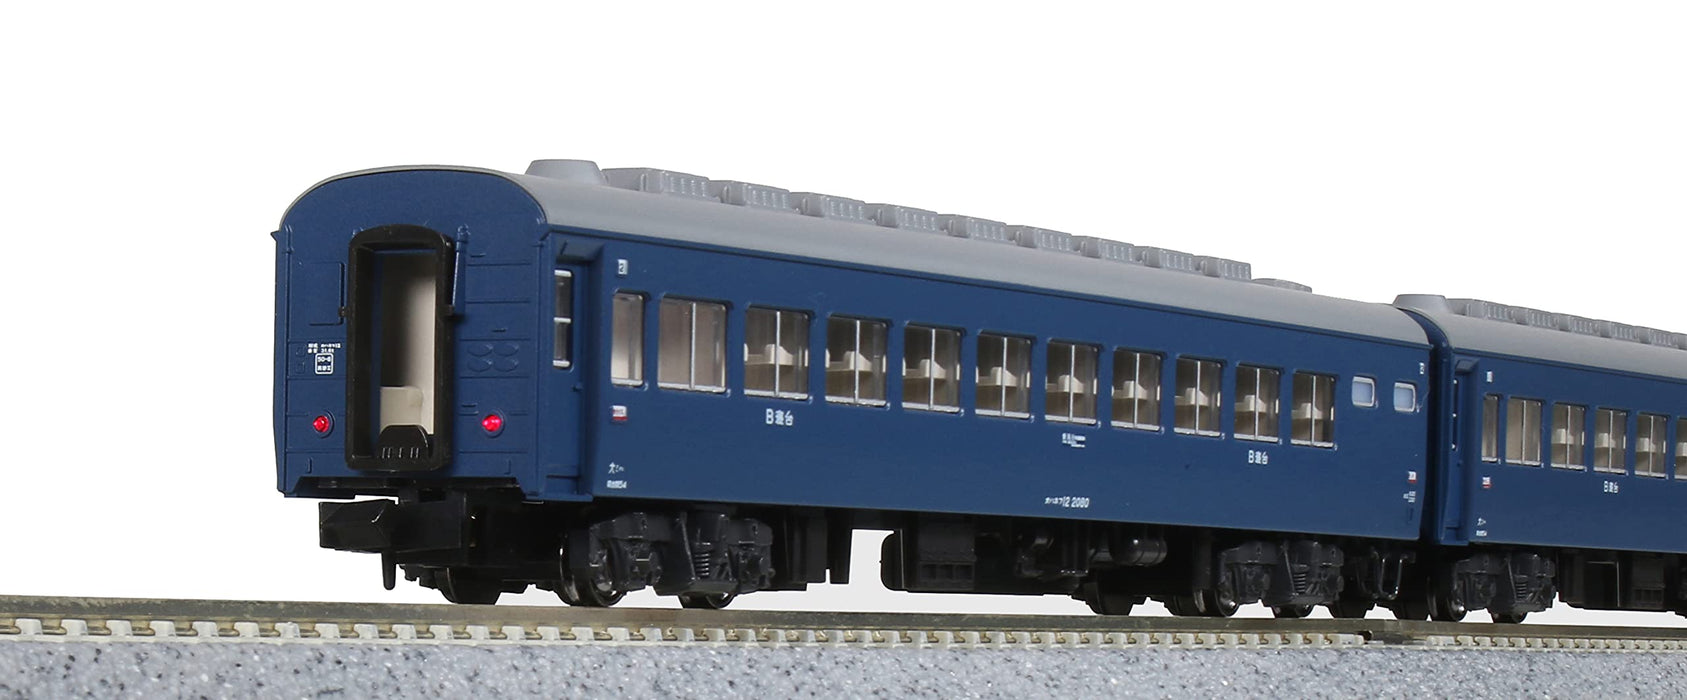 Kato N Gauge 8-Car Kitaguni Sleeper Express Passenger Set - Model Railway 10-1670